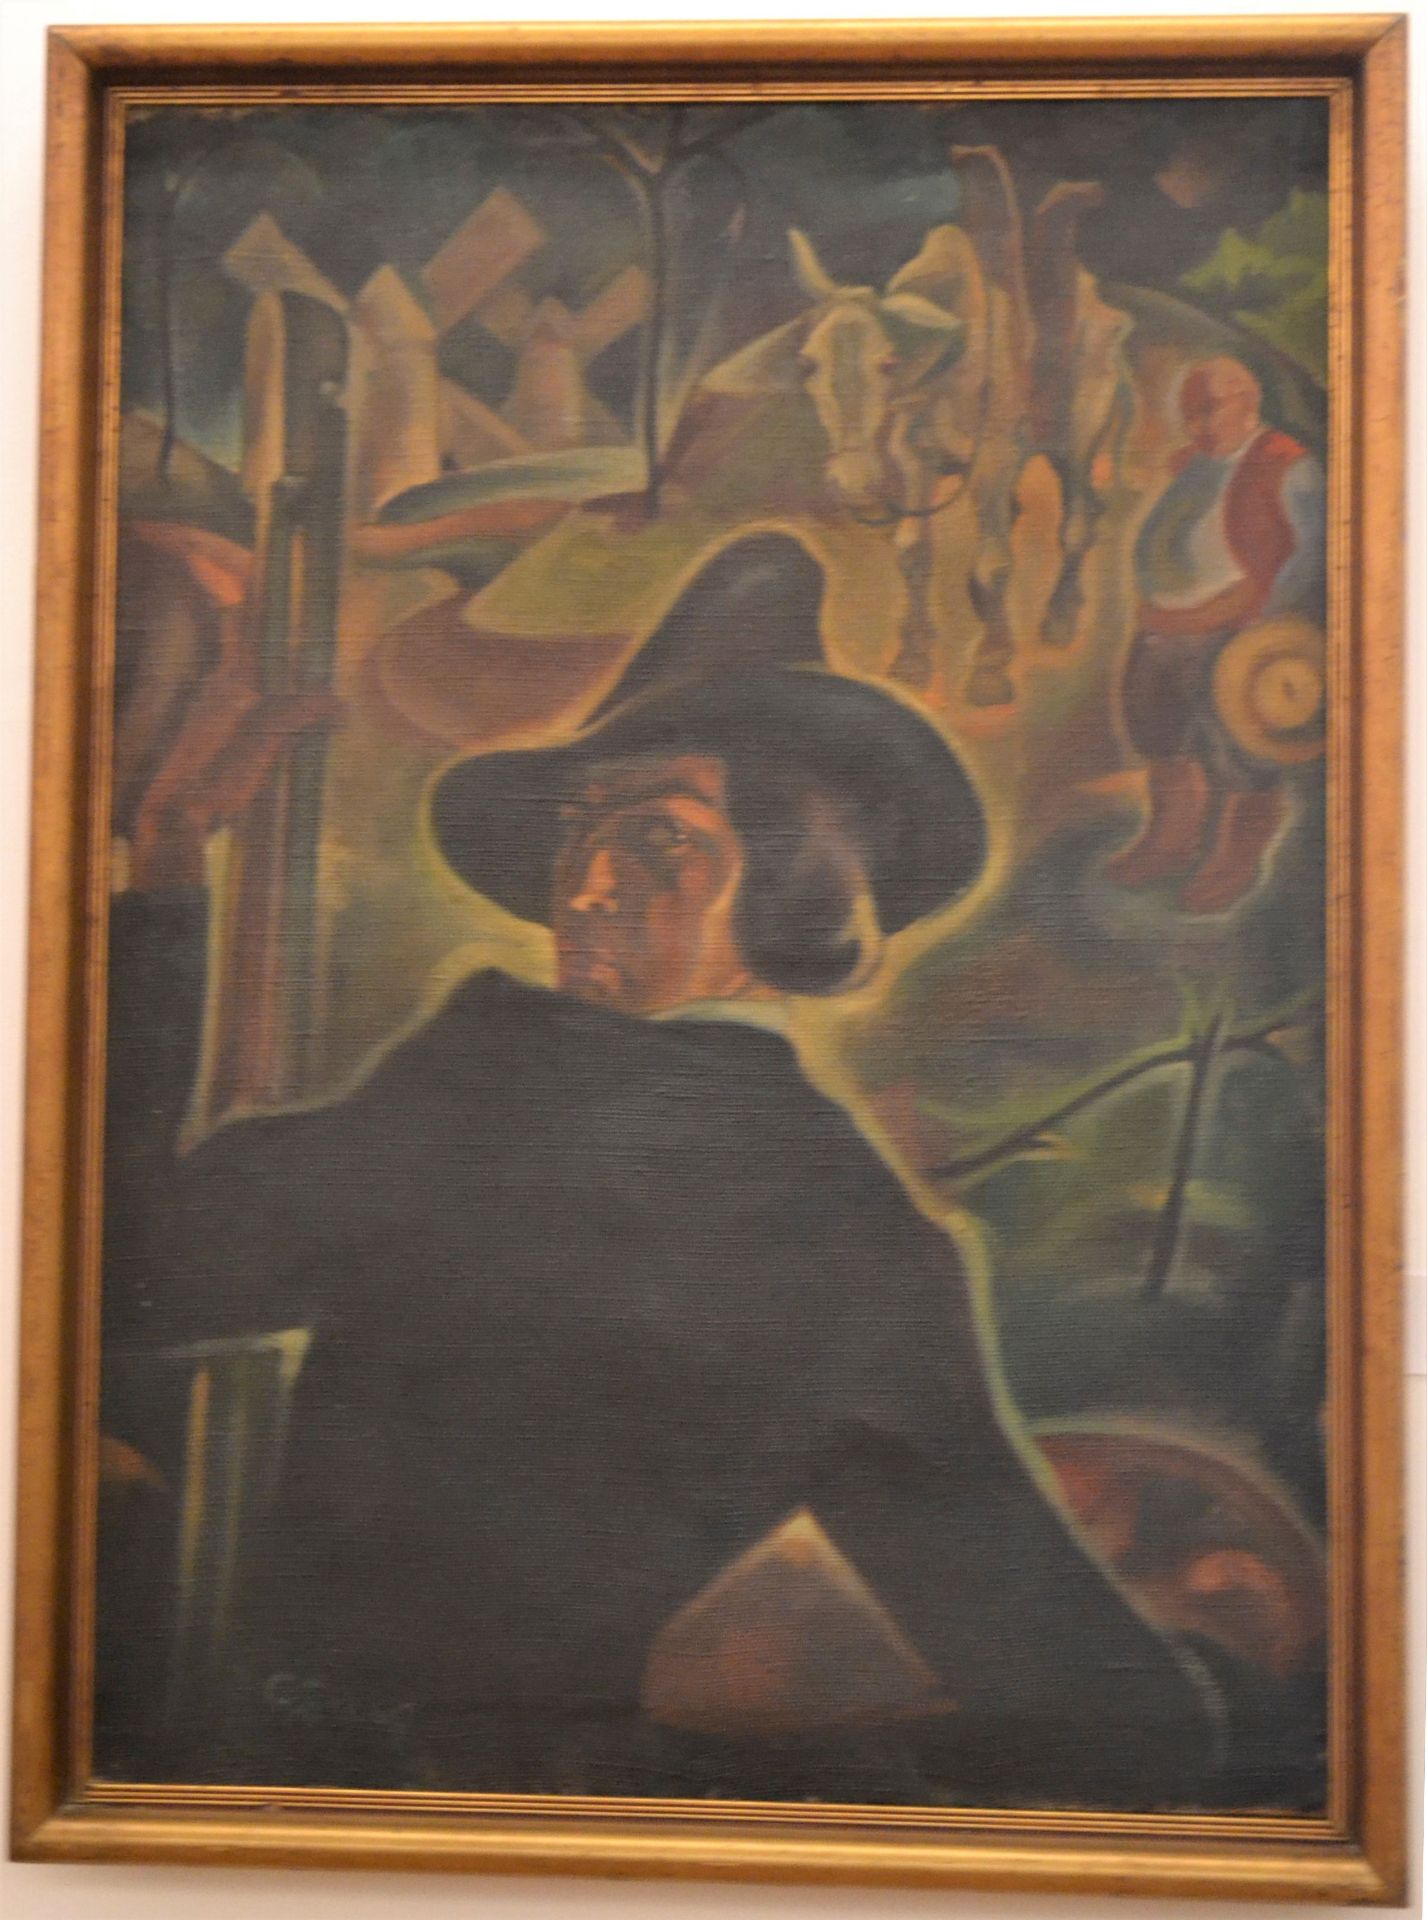 Tablouri din expoziția „Ștefan Szönyi MONUMENTAL‟, decembrie 2017-mai 2018, la Muzeul de Artă Timişoara